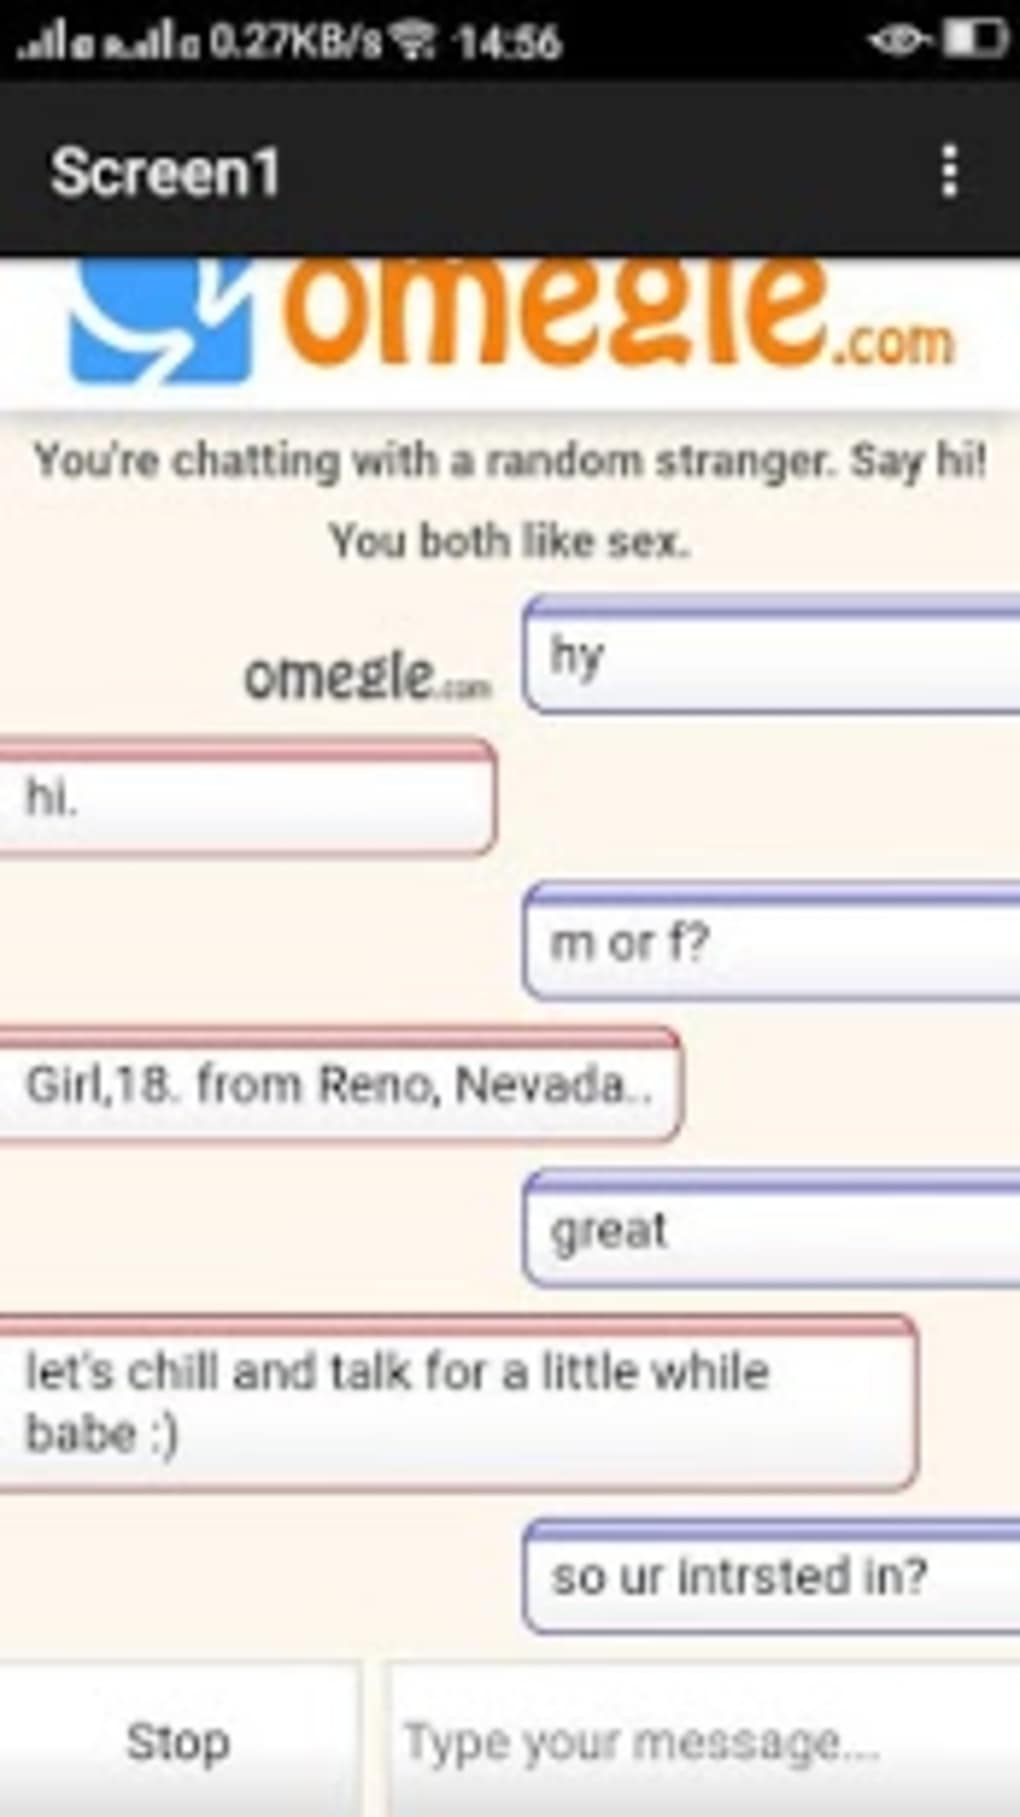 stranger live chat app